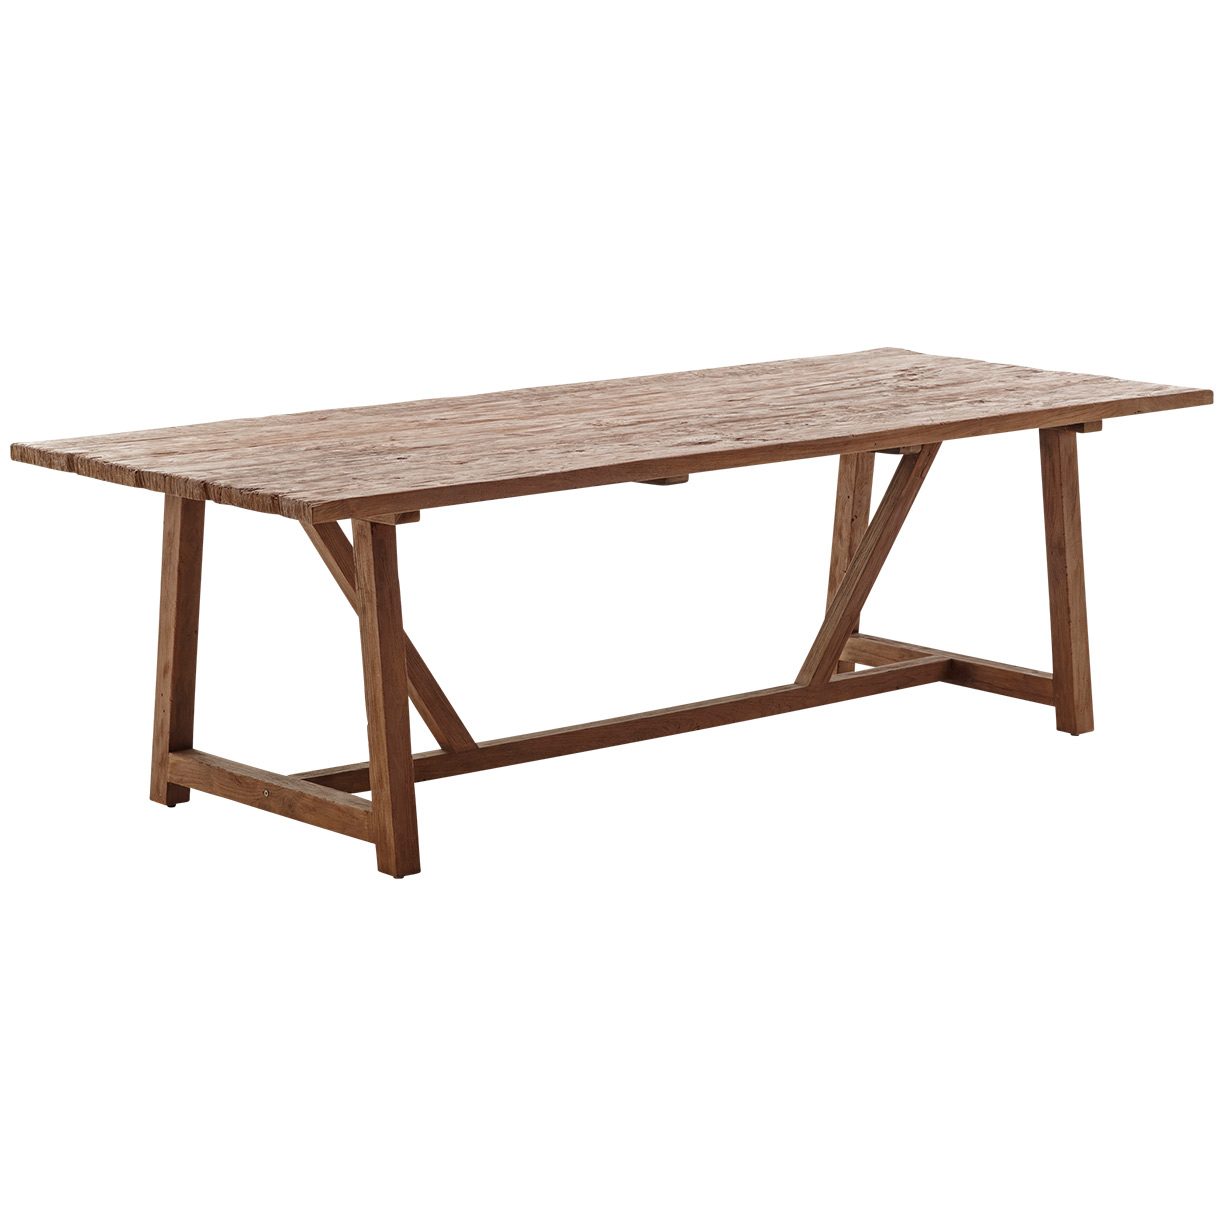 LUcas matbord 240x100 cm i återvunnen teak från Sika Design.